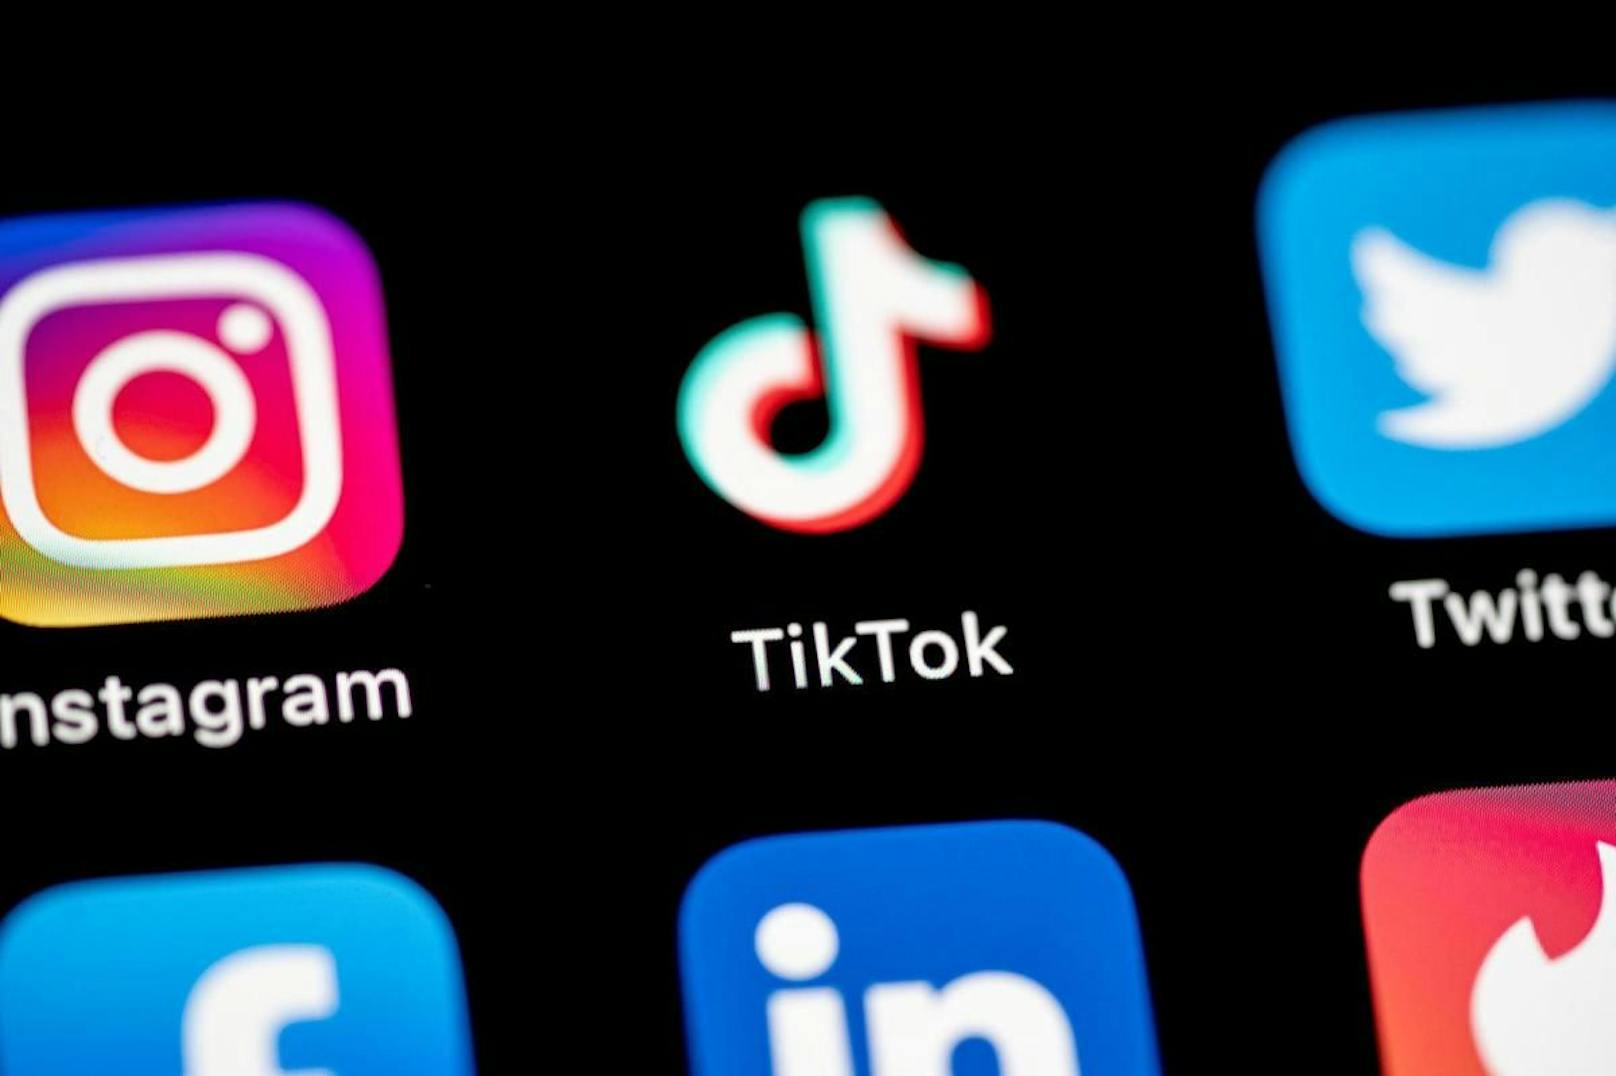 TikTok hält jedoch daran fest, dass man das Wohlergehen der Community an erster Stelle sehe und aktiv gegen Fehlinformationen in der App vorgehe.